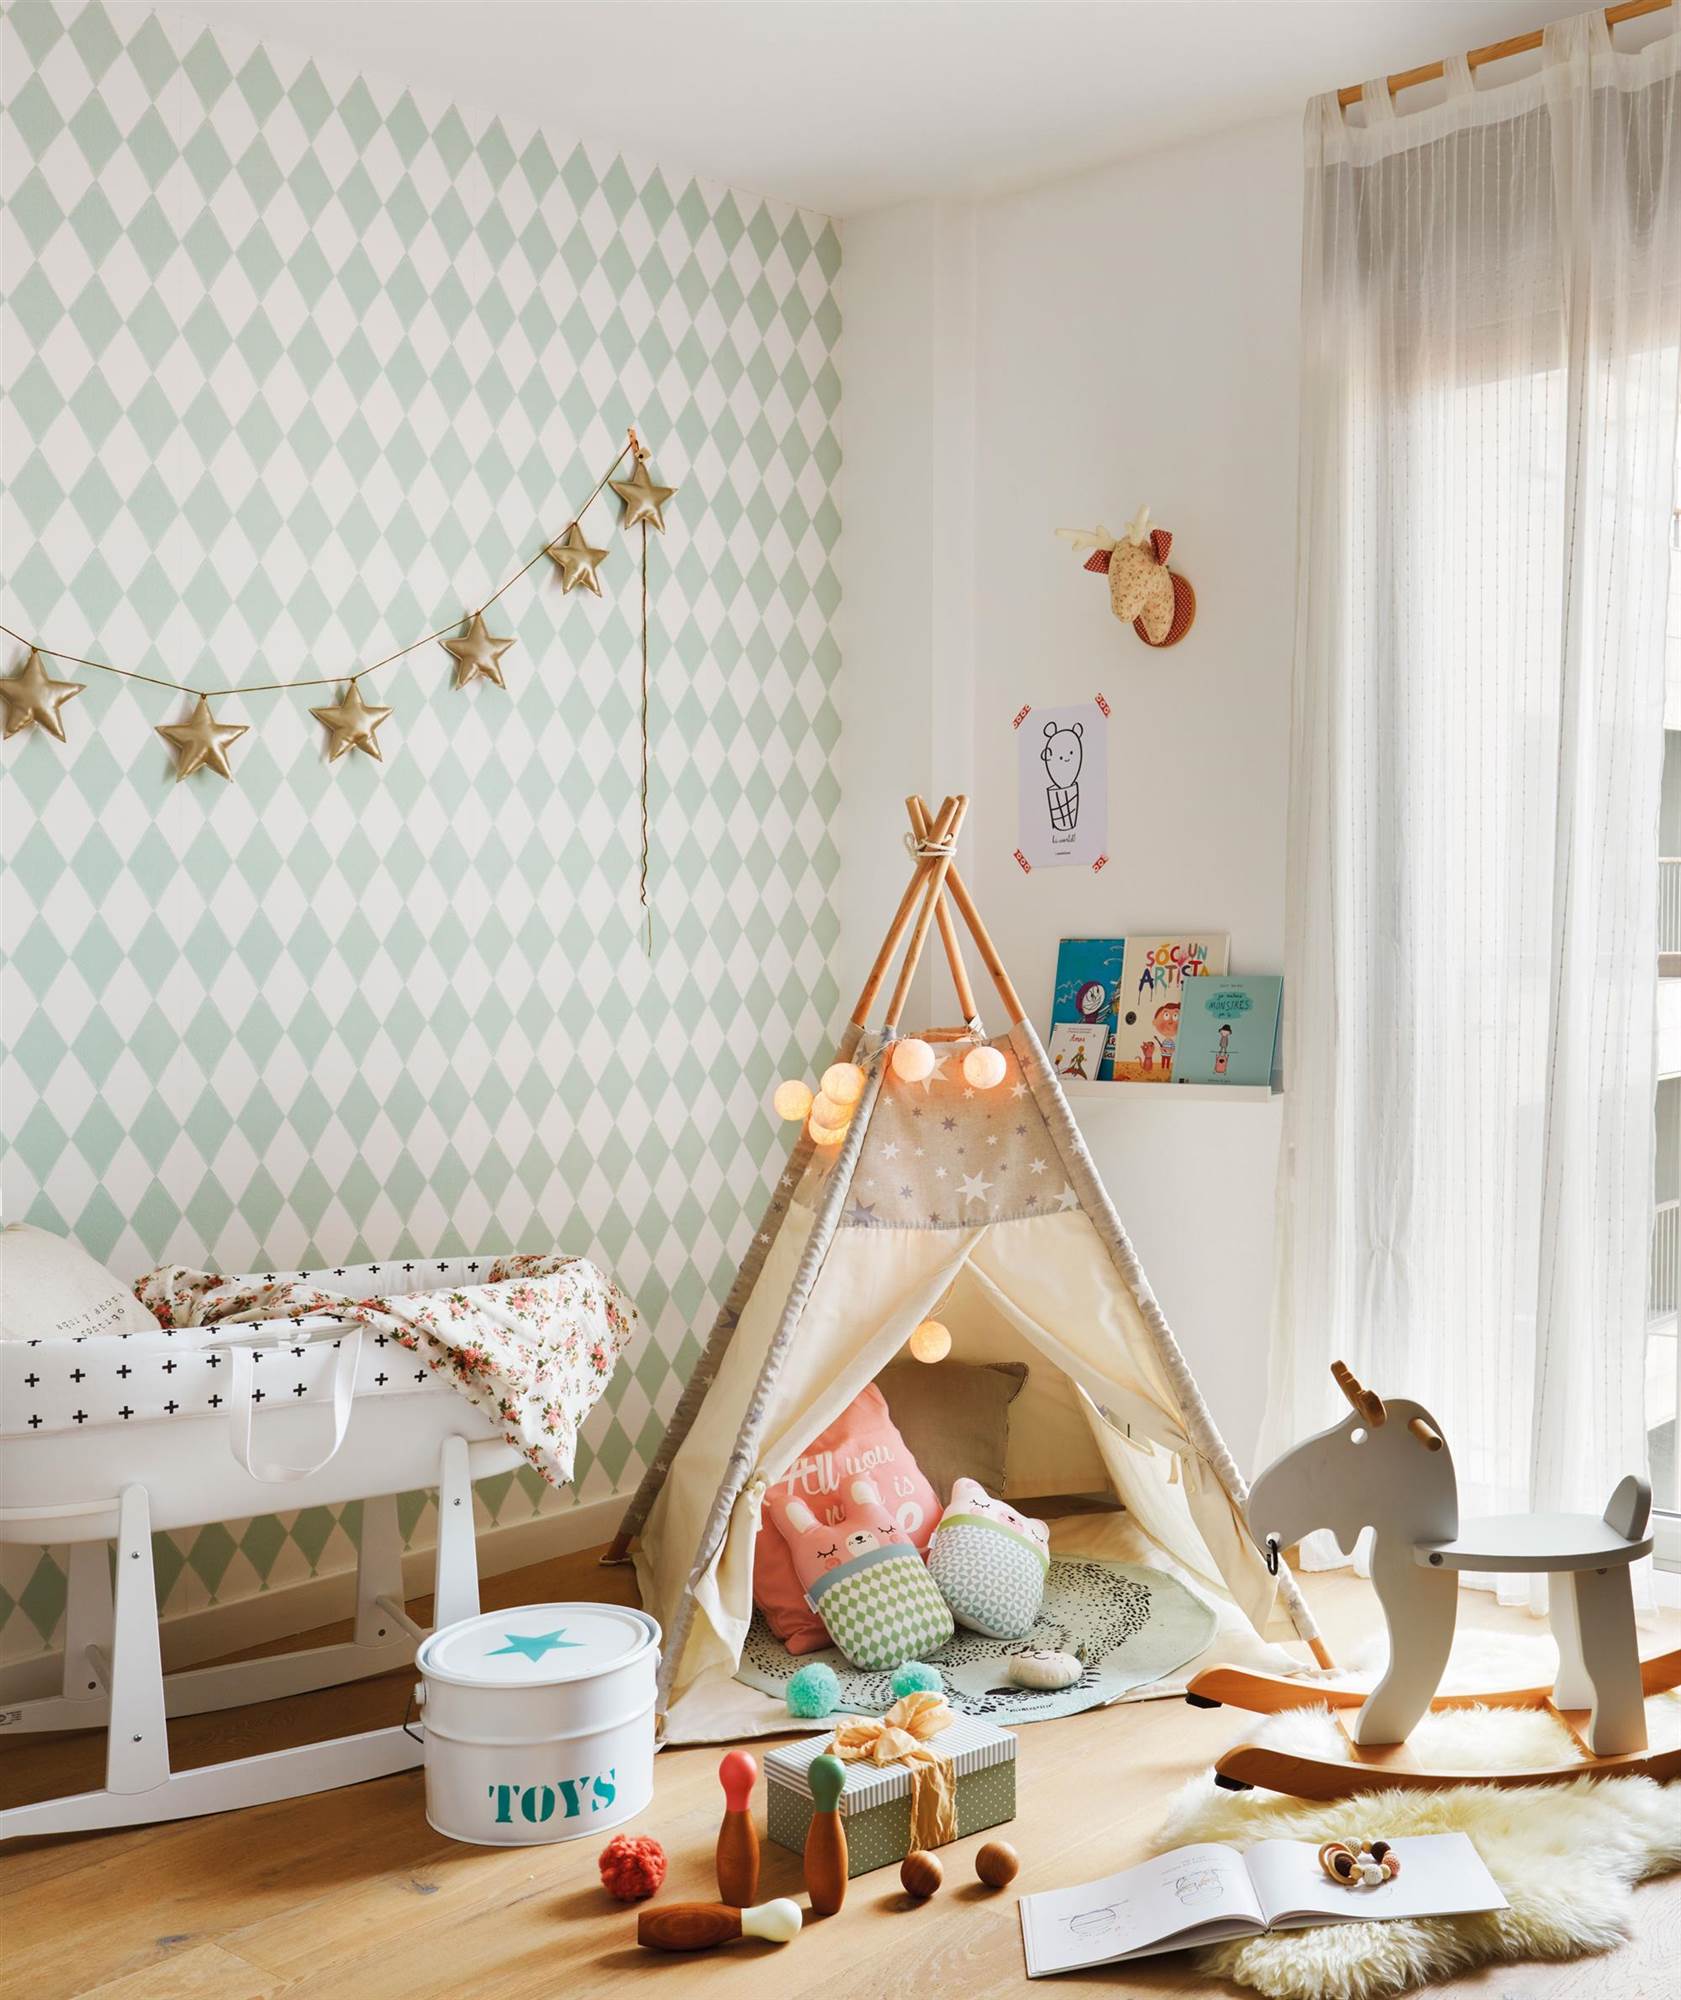 Dormitorio infantil con tipo y papel pintado de rombos.